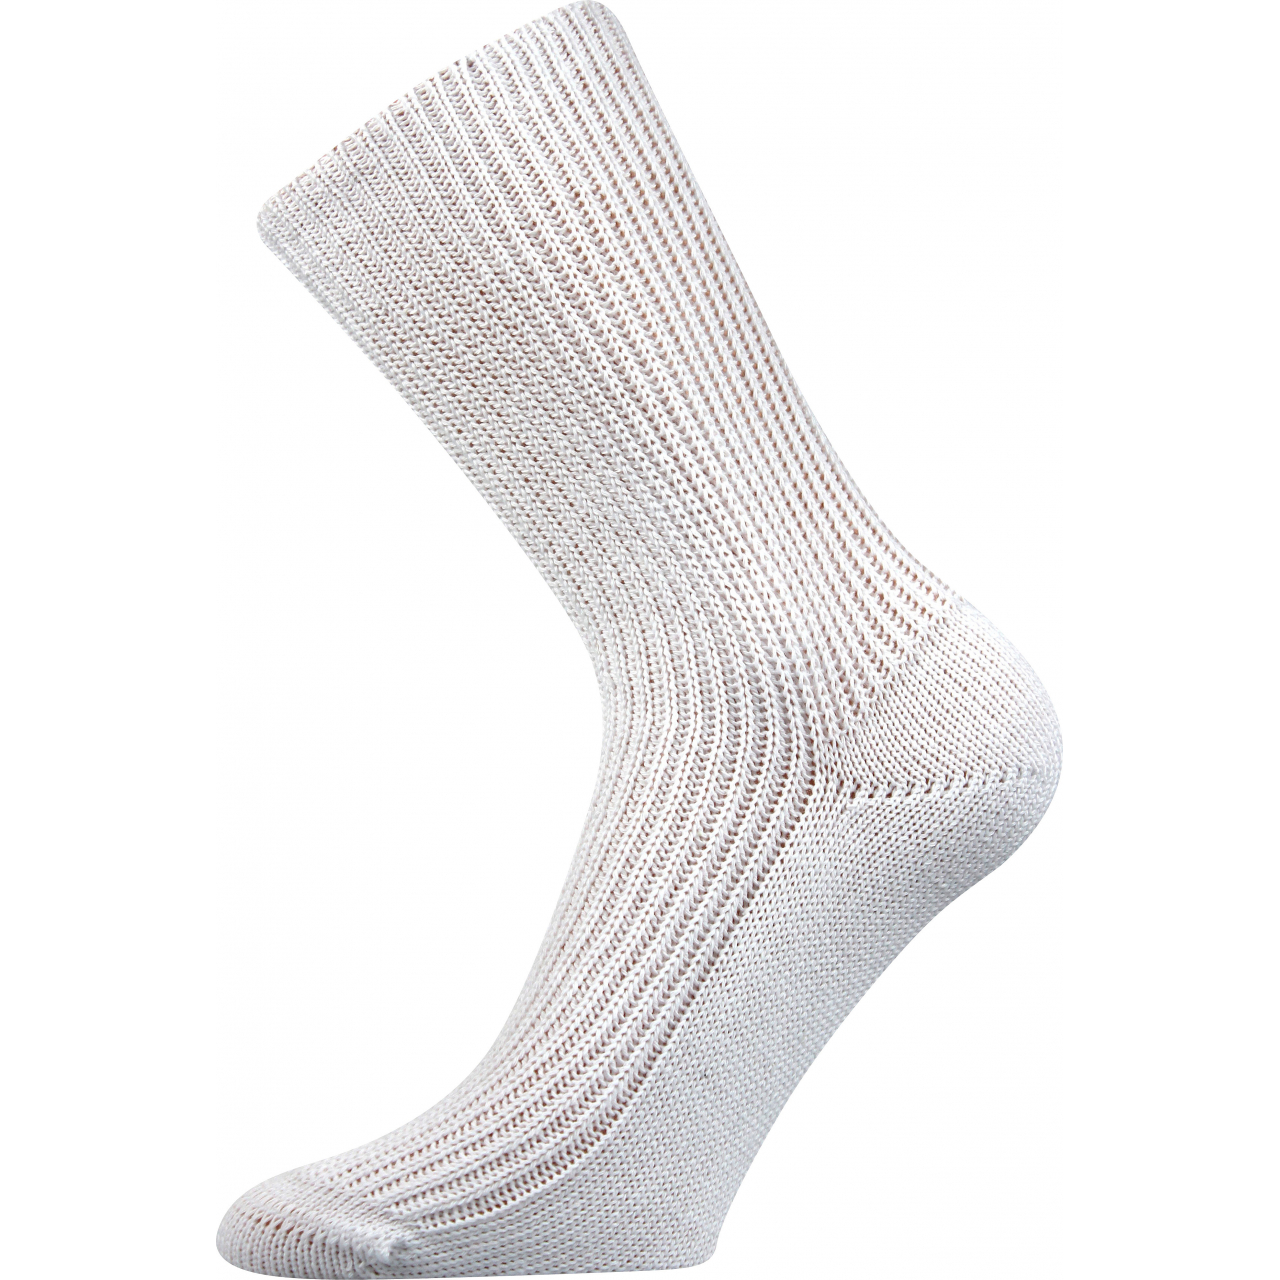 Ponožky unisex Boma Pepina - bílé, 35-37